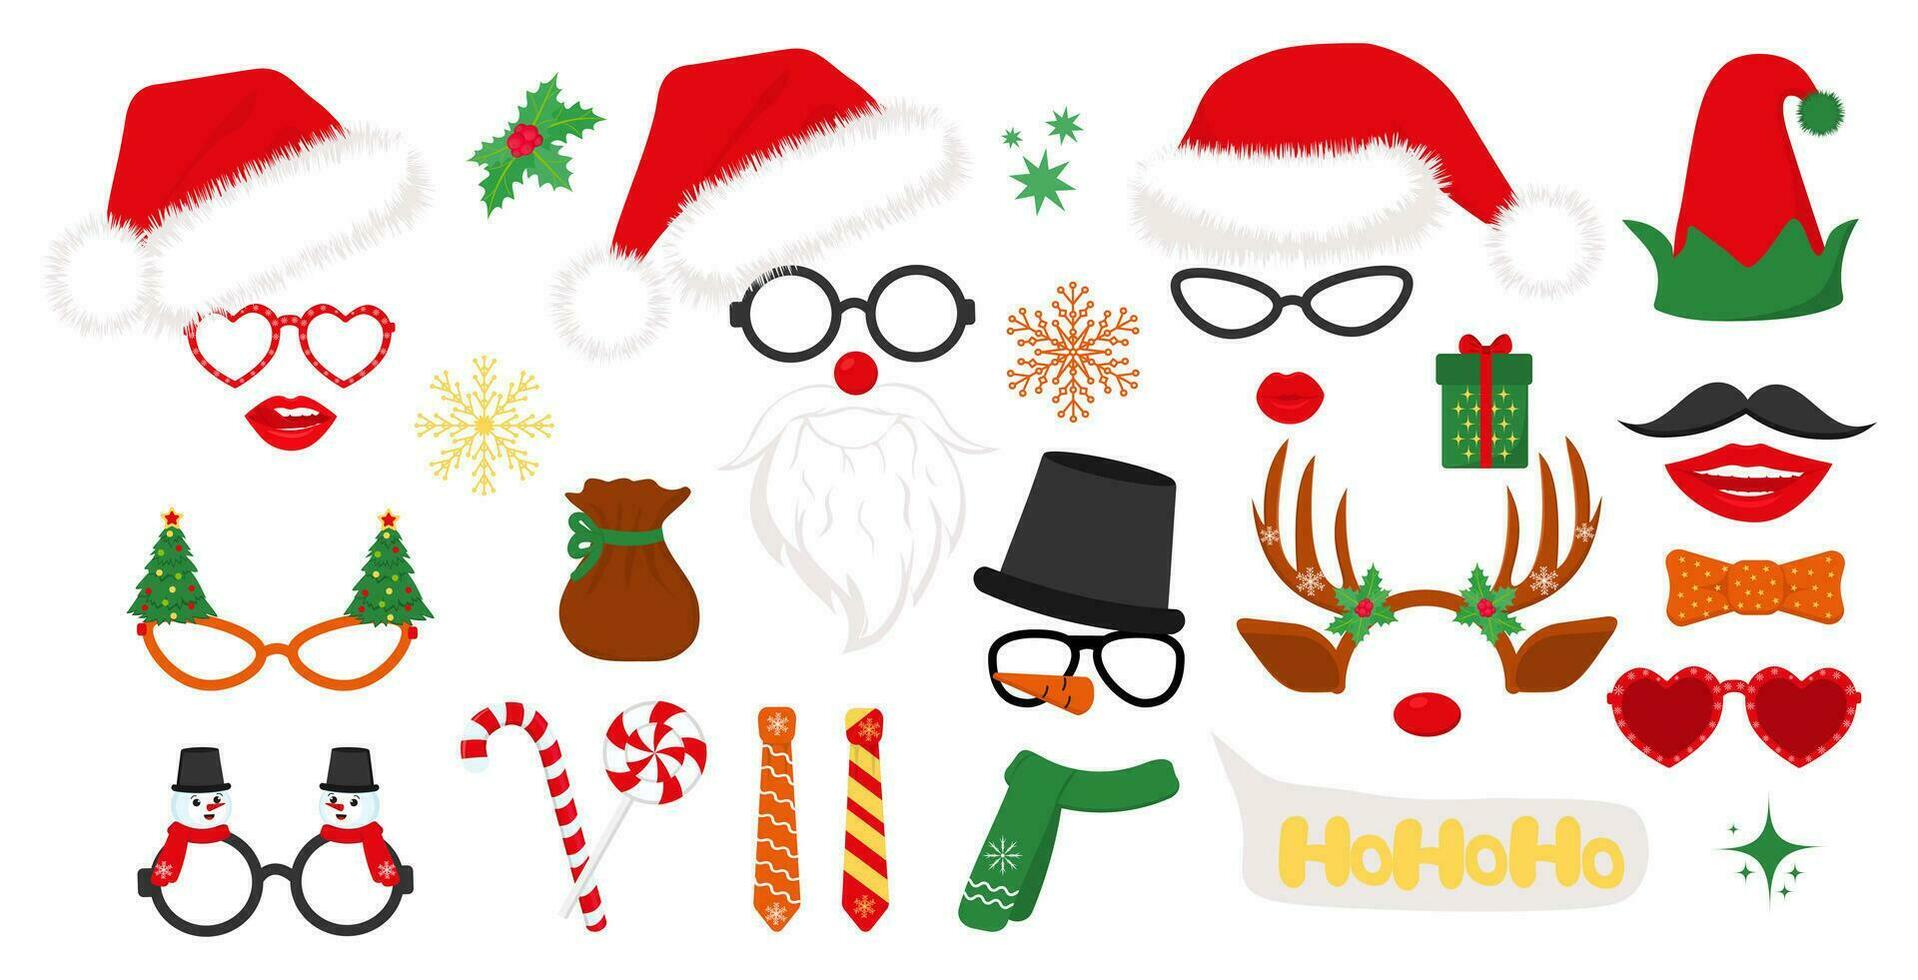 Papa Noel sombreros, duende y muñeco de nieve, reno cornamenta, lentes. conjunto de nuevo año imágenes prediseñadas accesorios para Navidad foto puesto. vector ilustración